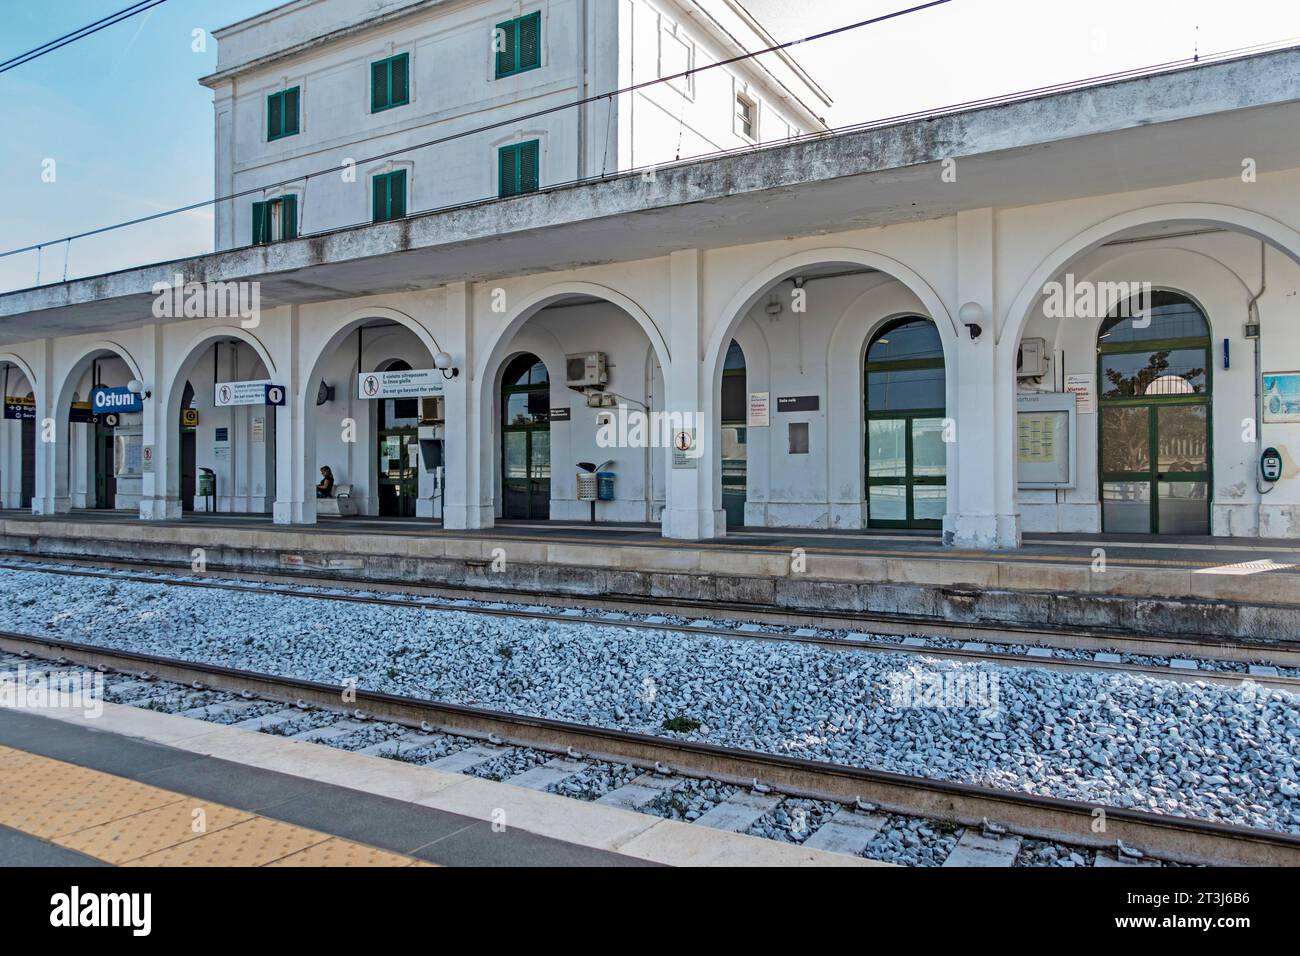 Der Bahnhof in Ostuni, Italien. Die Zugverbindungen werden von Trenitalia, dem wichtigsten Eisenbahnunternehmen in Italien, betrieben. Stockfoto